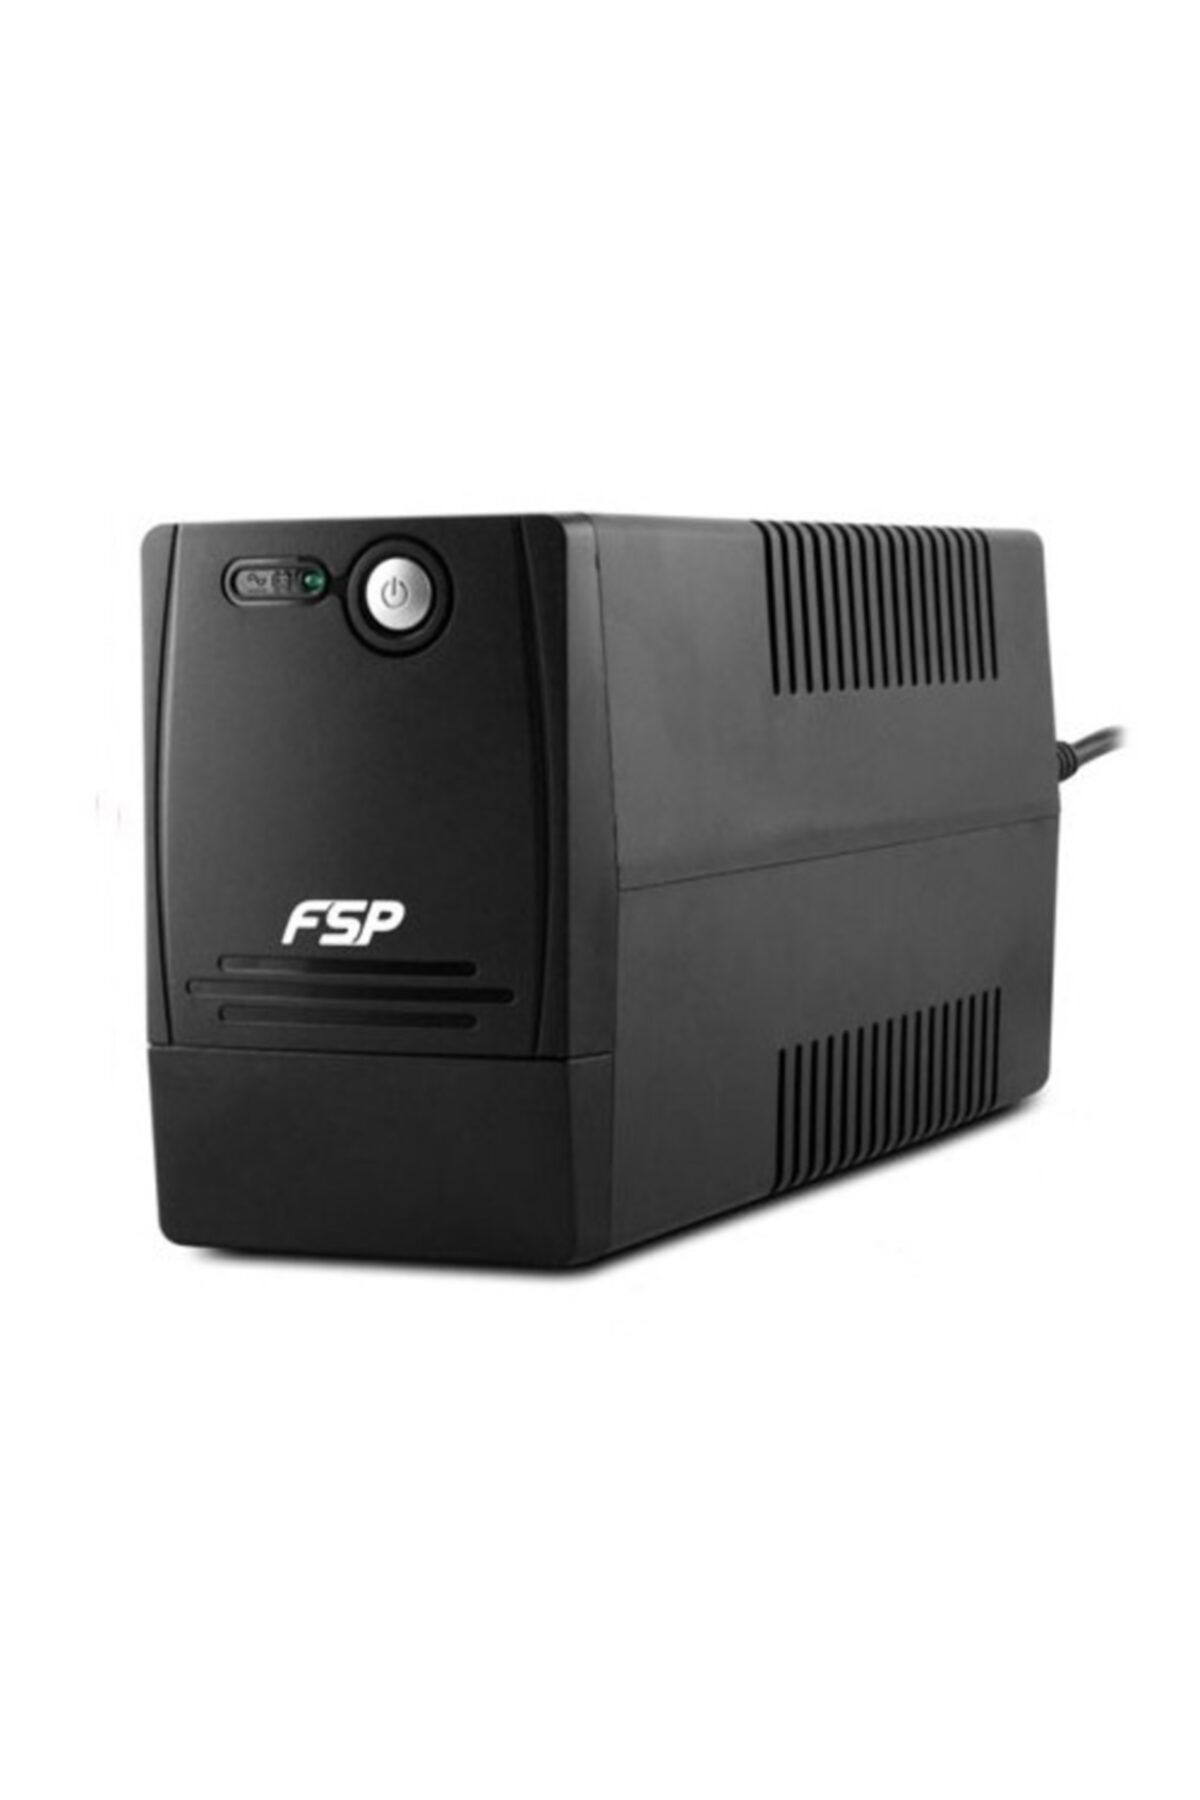 FSP Fp600 600va Line Interactive Ups (1x7a Akü)